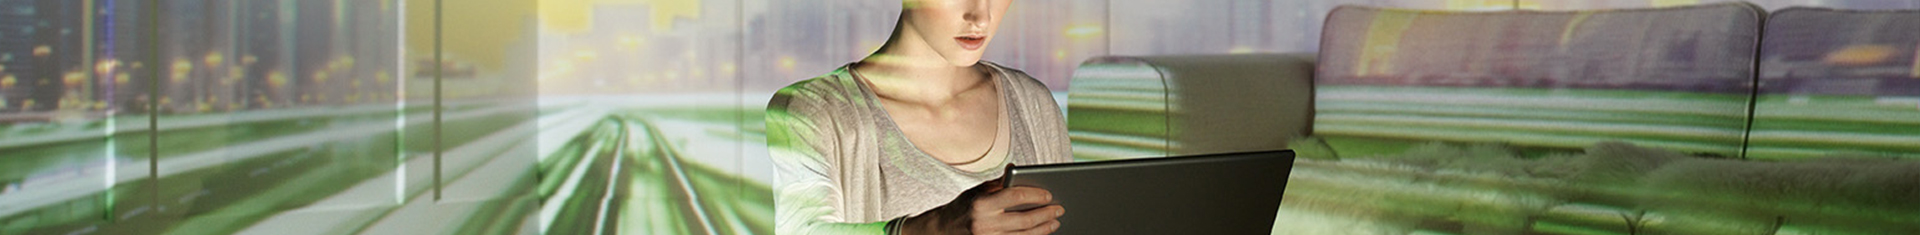 kleiner Bildausschnitt einer Frau, die im Wohnzimmer vor dem Laptop sitzt; über das gesamte Bild zieht sich ein virtueller Datenhighway